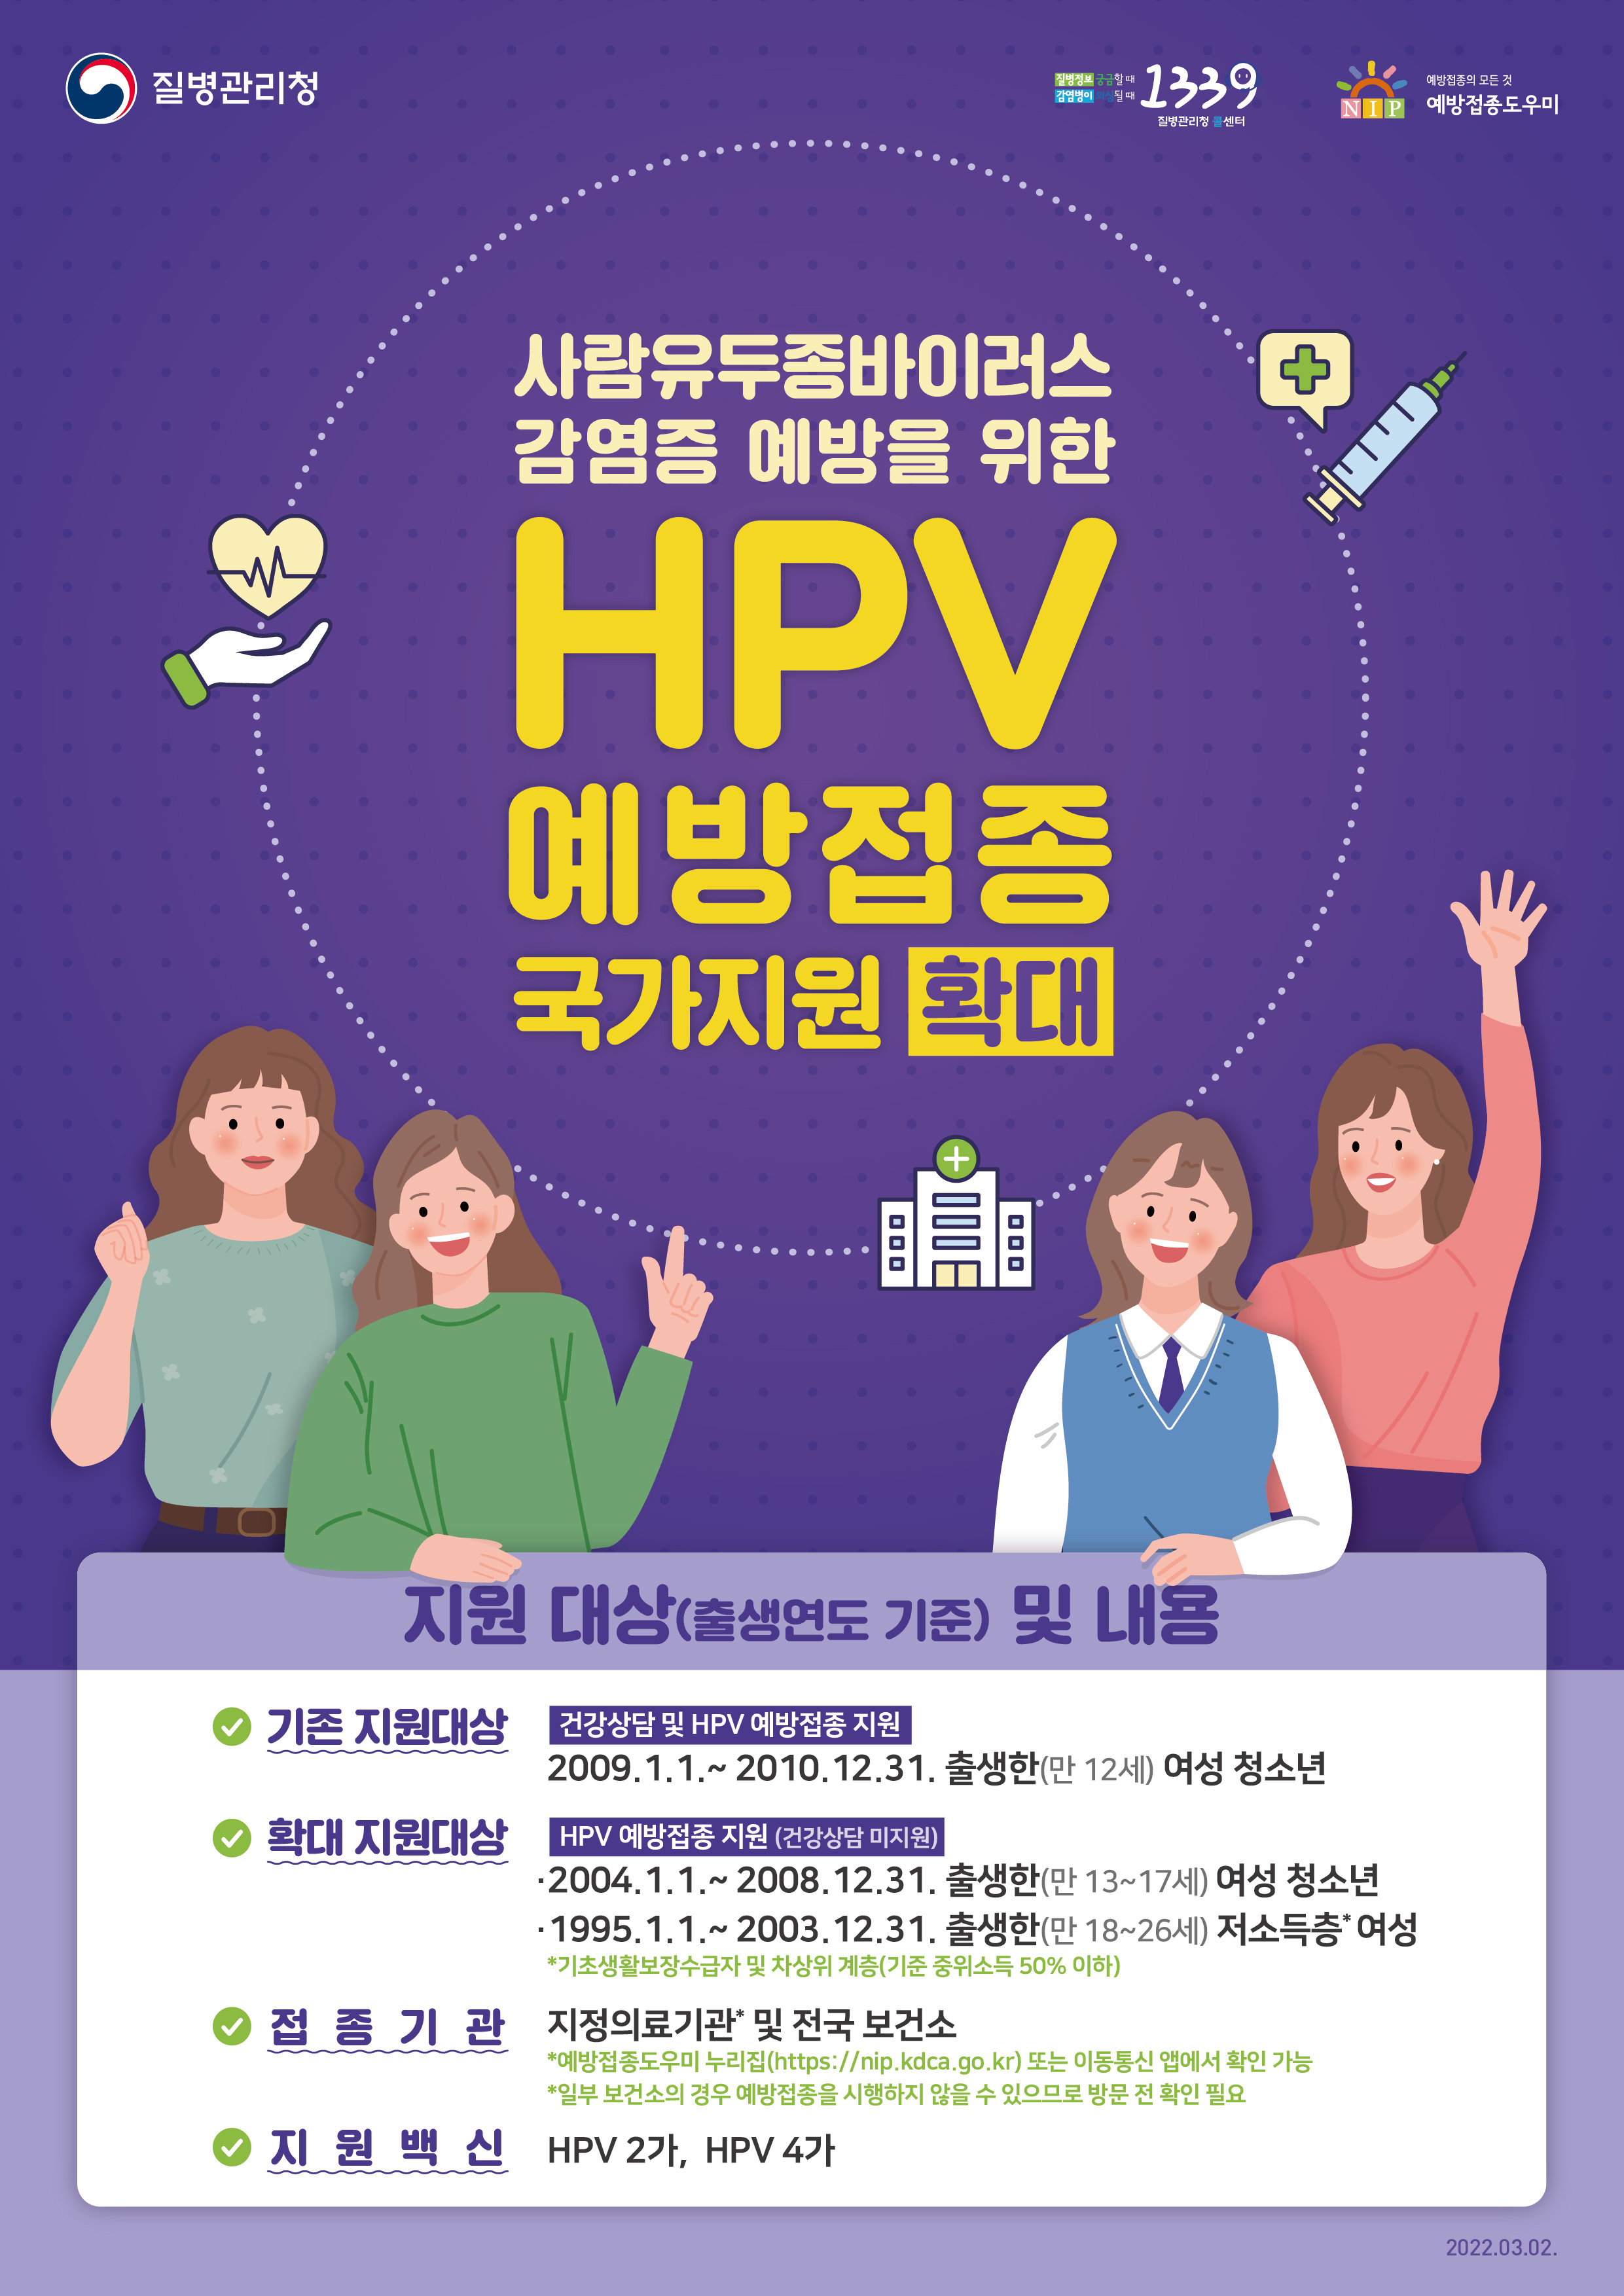 질병관리청 1339 예방접종도우미 사람유두종바이러스 감염증 예방을 위한 HPV예방접종 국가지원 확대 지원 대상(출생연도 기준) 및 내용 기존 지원대상 건강상담 및 HPV 예방접종 지원 2009.1.1.~2010.12.31.출생한(만12세)여성 청소년 확대 지원대상 HPV 예방접종 지원(건강상담 미지원) 2004.1.1.~2008.12.31.출생한(만13~17세) 여성 청소년 1995.1.1.~2003.12.31.출생한(만18~26세)저소득층여성*기초생활보장수급자 및 차상위 계층(기준 중위소득 50%이하) 접종기관 지정의료기관 및 전국 보건소*예방접종도우미 누리집(https://nip.kdca.go.kr)또는 이동통신 앱에서 확인 가능 *일부 보건소의 경우 예방접종을 시행하지 않을 수 있으므로 방문 전 확인 필요 지원백신 HPV2가, HPV4가